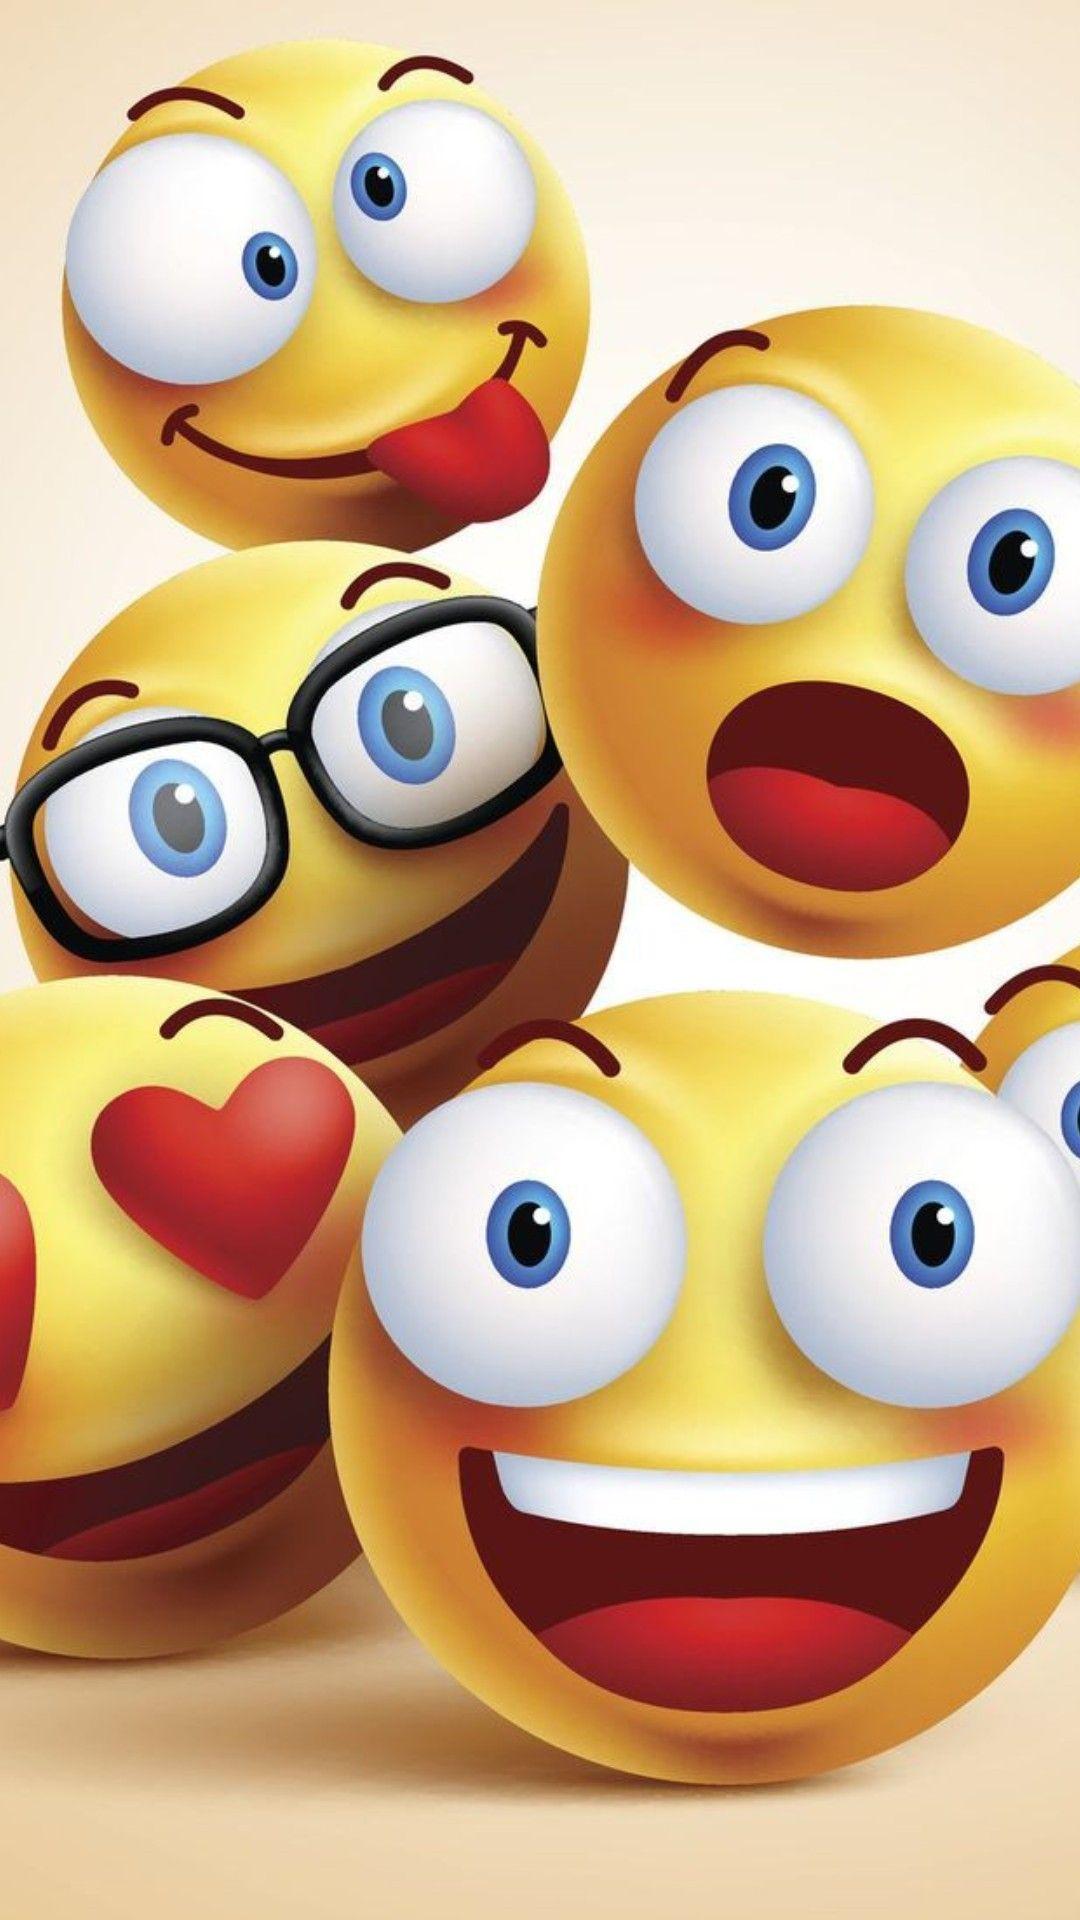 Emoji iPhone Wallpapers - Wallpaper Cave